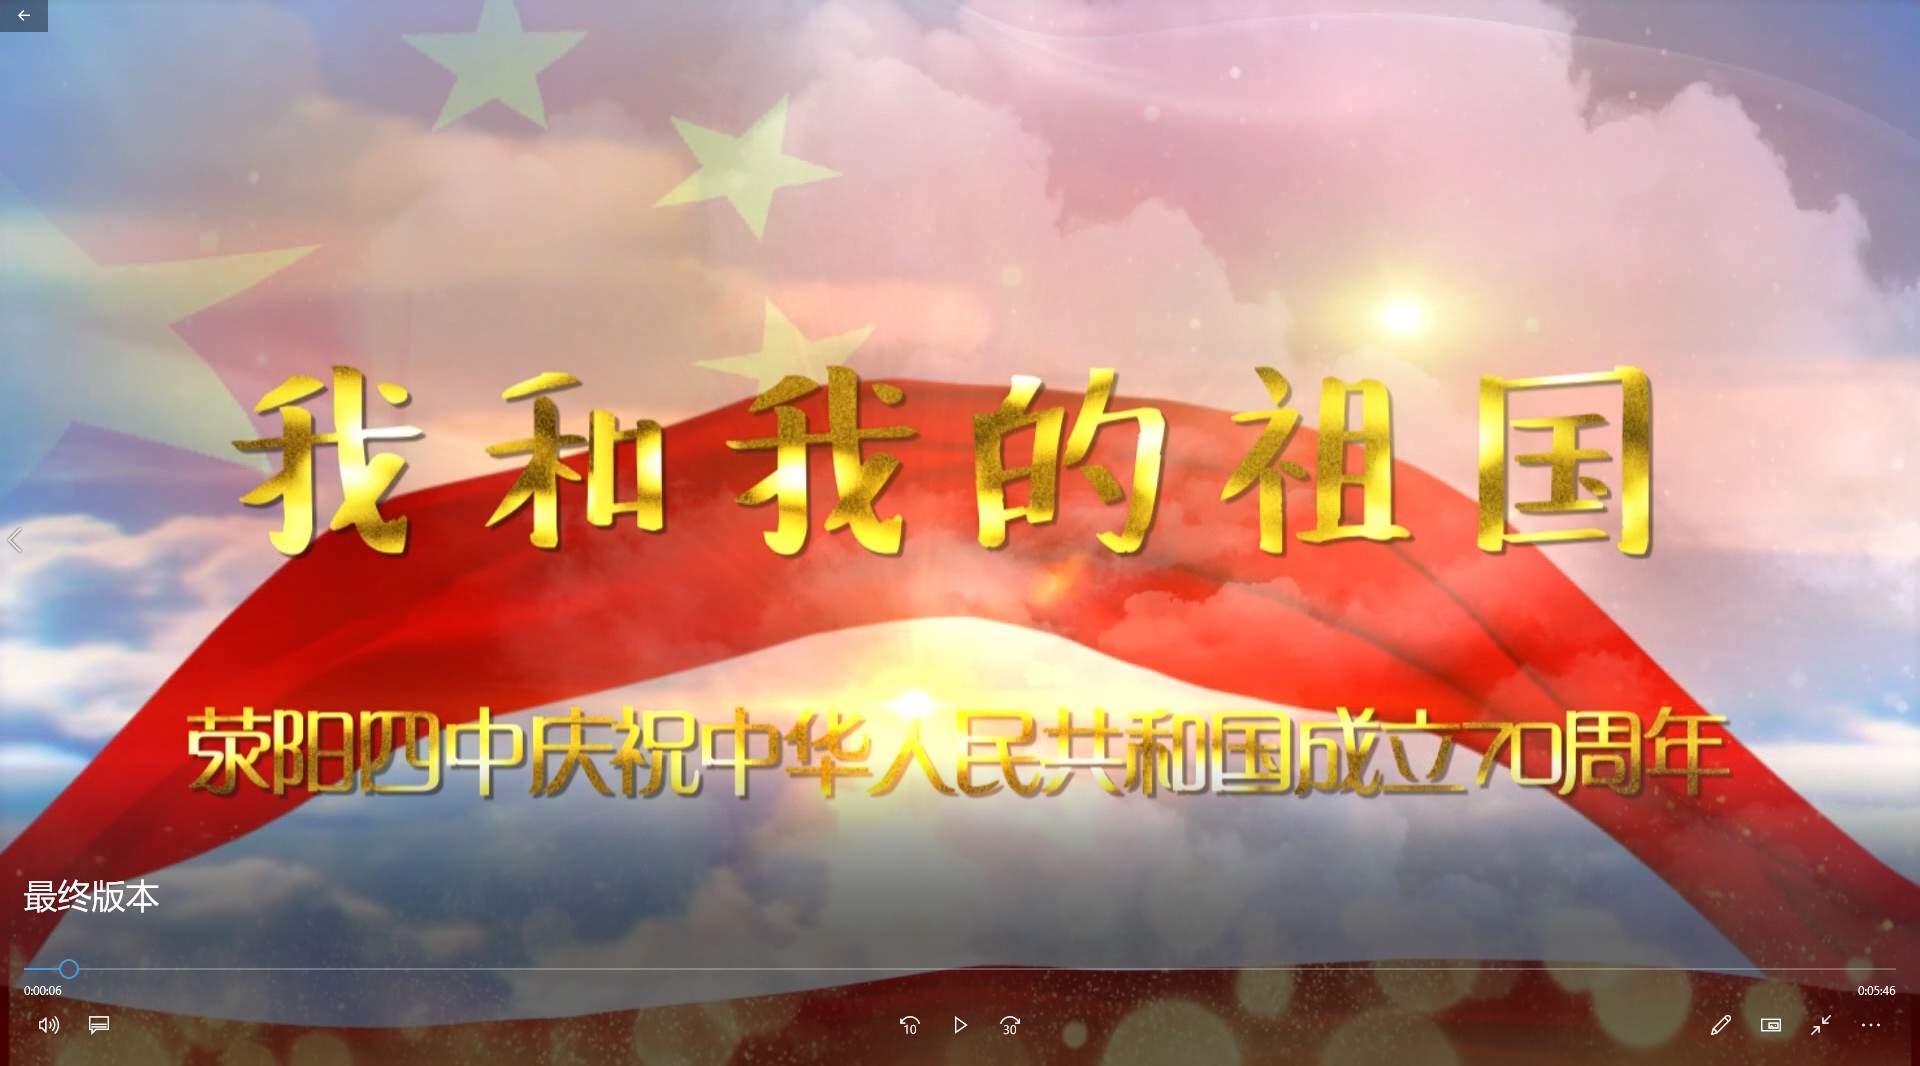 我和我的祖国 荥阳四中庆祝中华人民共和国成立70周年 